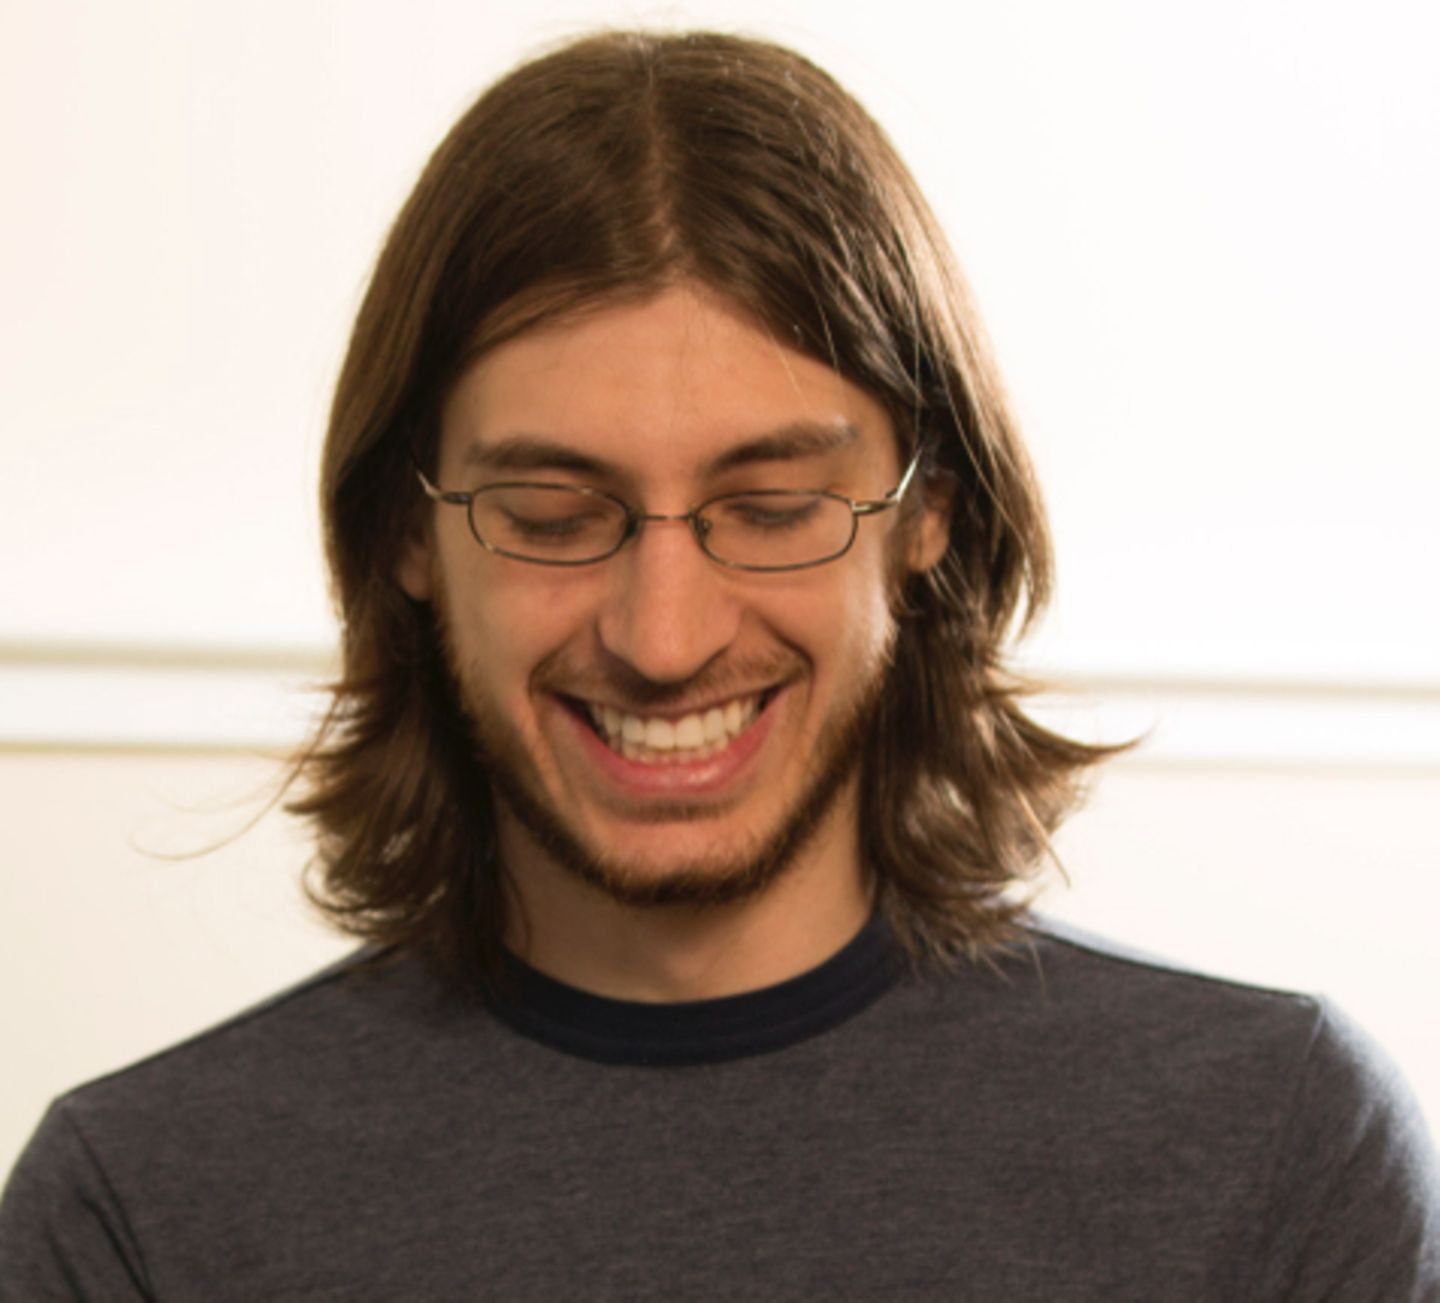 Francisco Tolmasky entwickelte den Safari-Browser für das iPhone